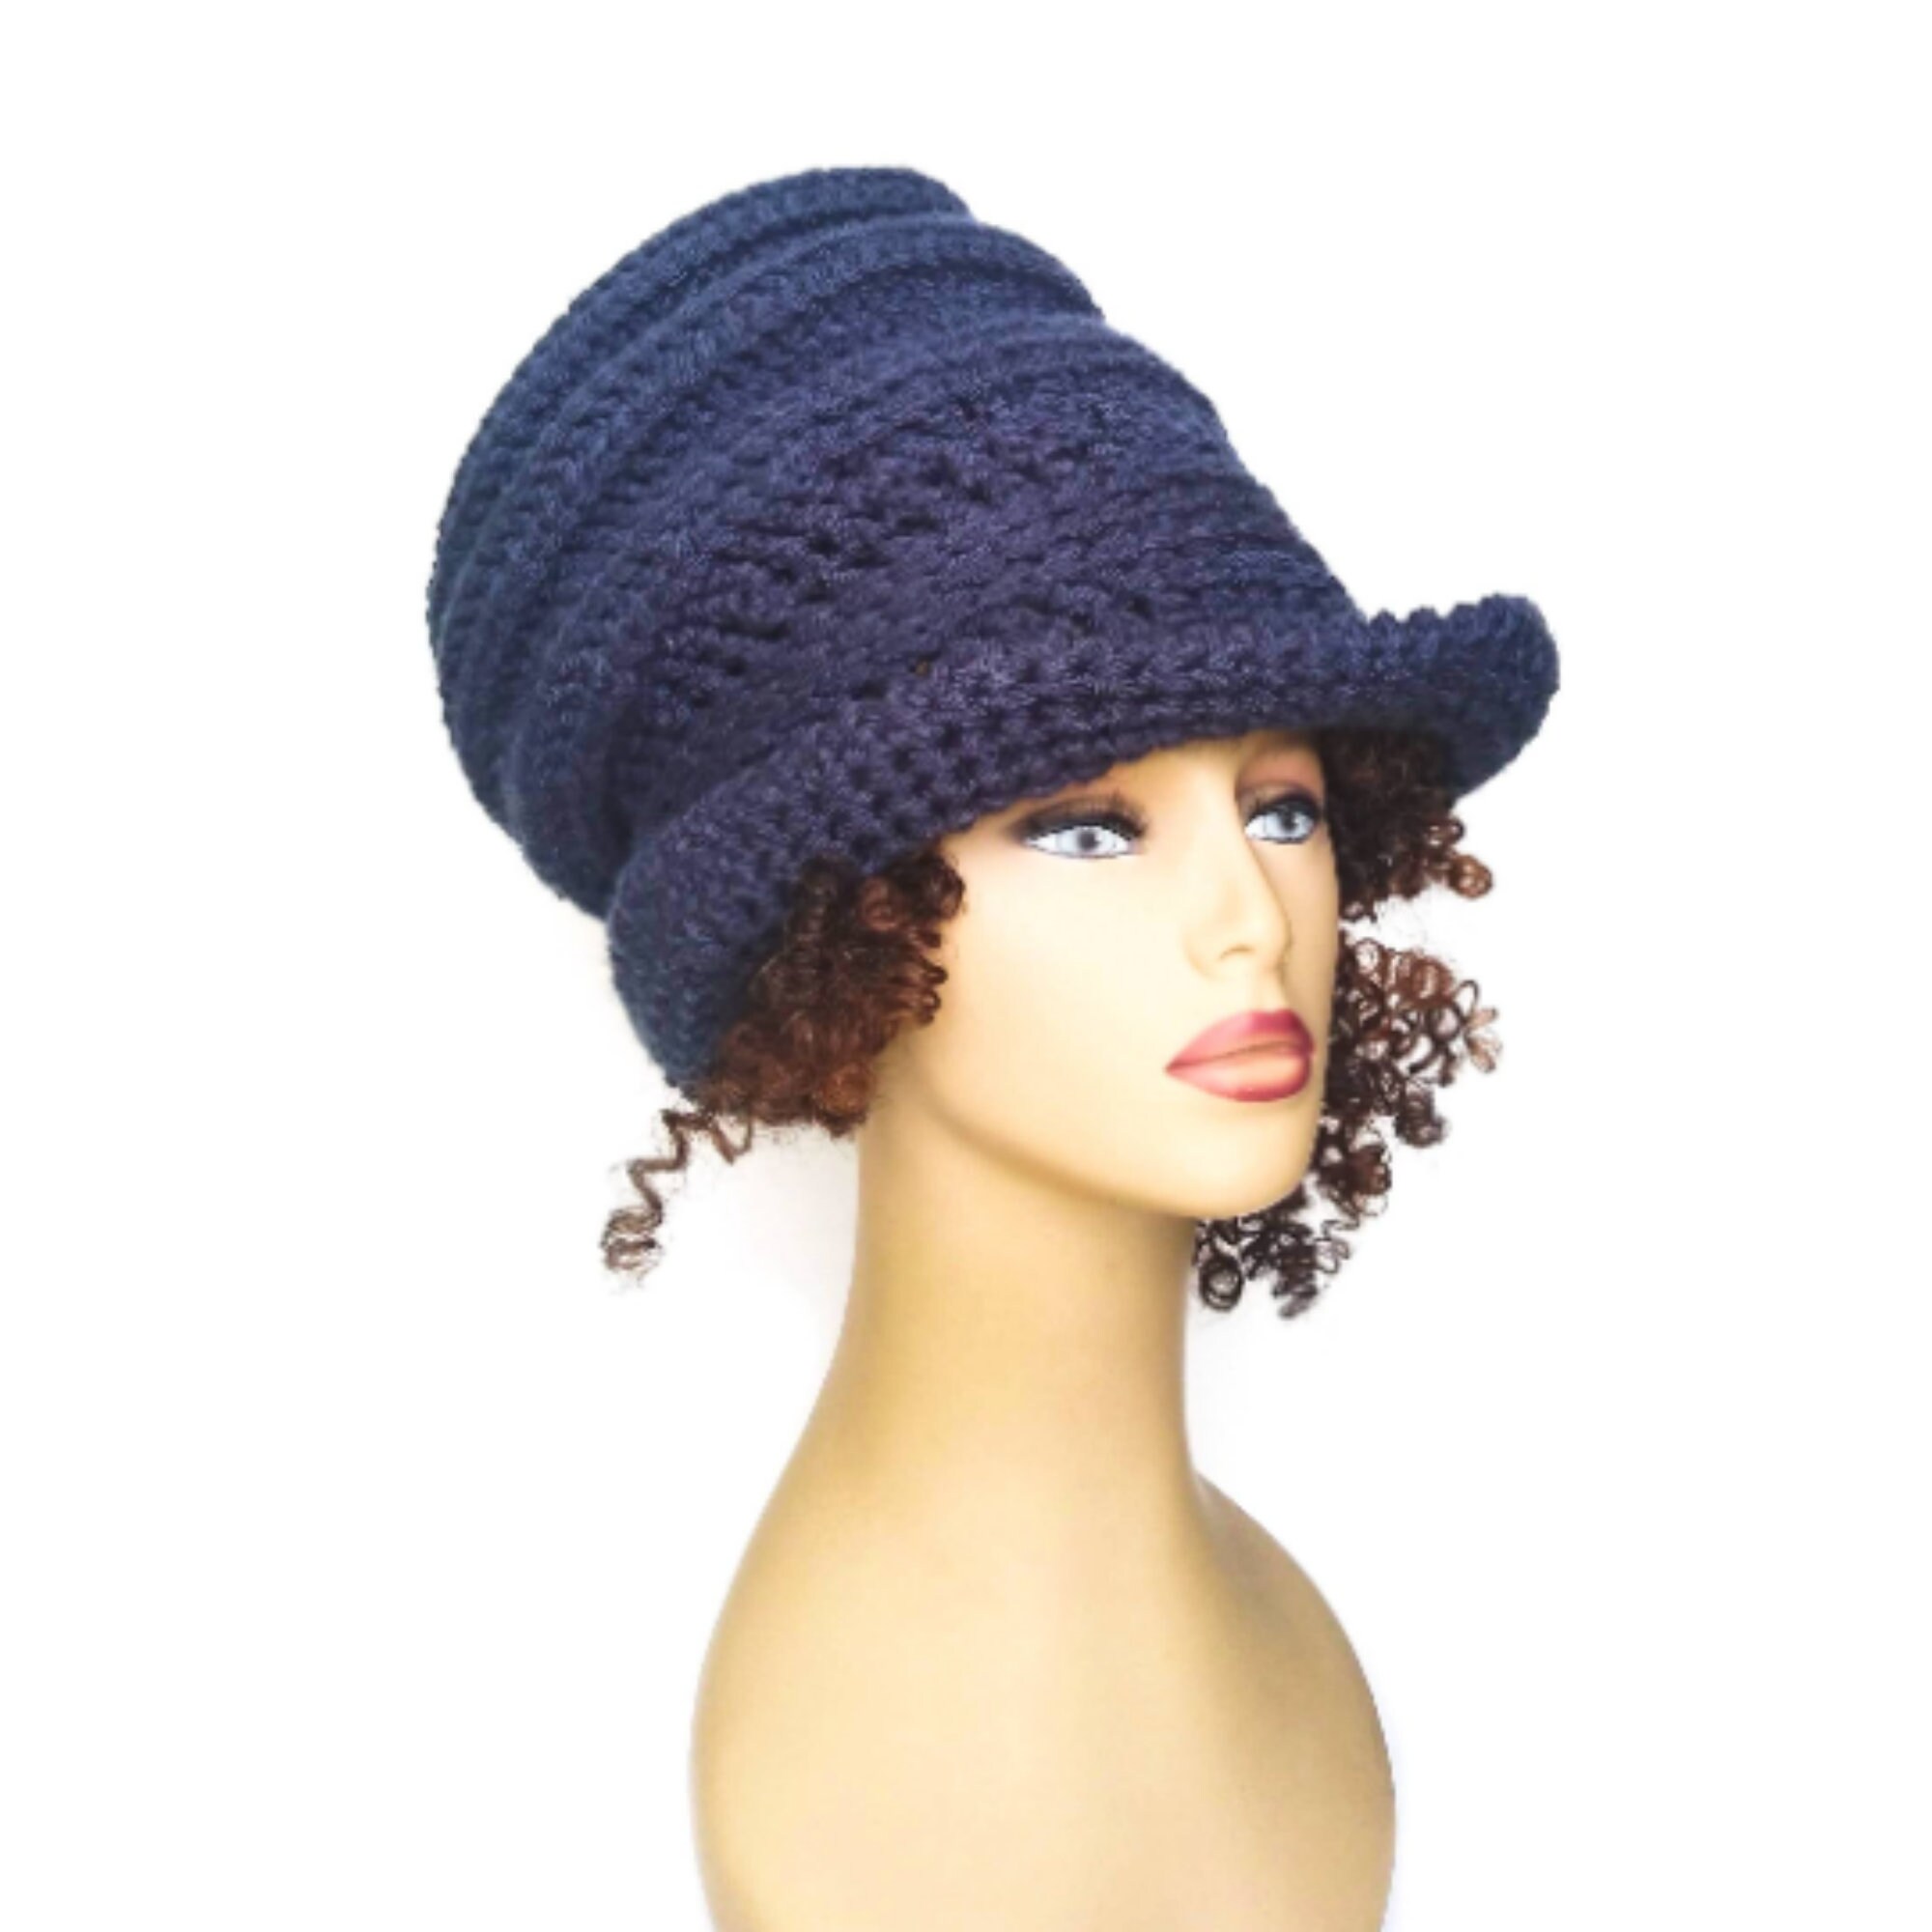 Dreadbag Hat Pattern Free Download Dreadlock Hat Crochet | Etsy